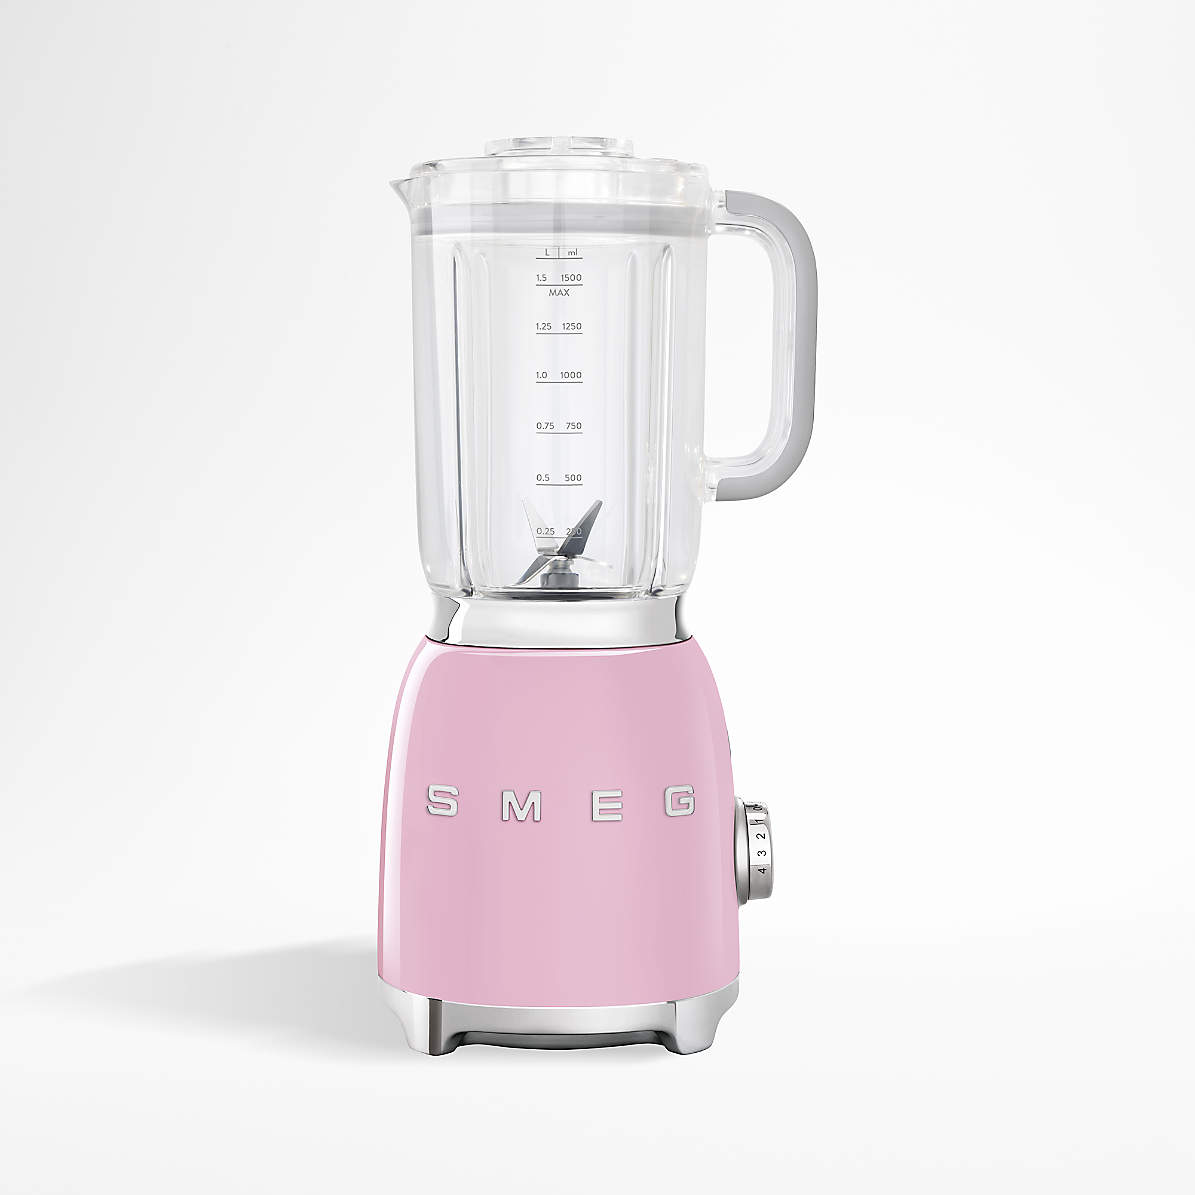 Vejrudsigt lomme Sidst Smeg Pink Blender + Reviews | Crate & Barrel